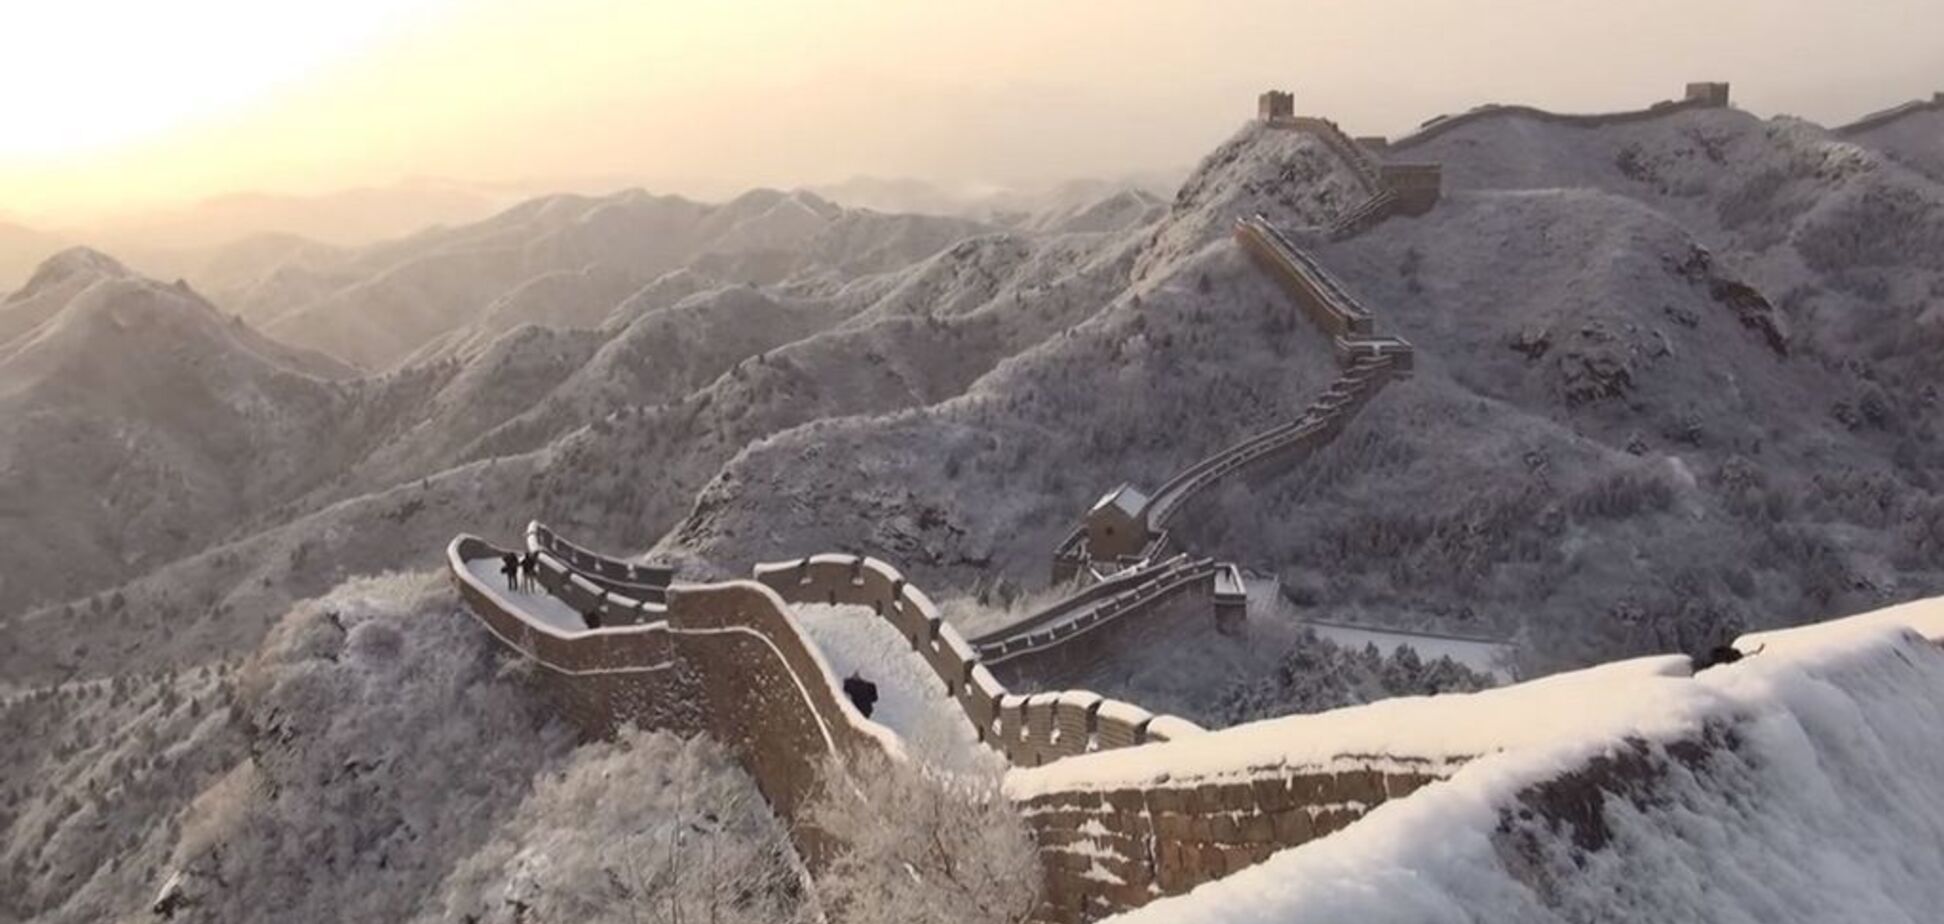 Велика Китайська стіна обледеніла і перетворилася в гірку: відео